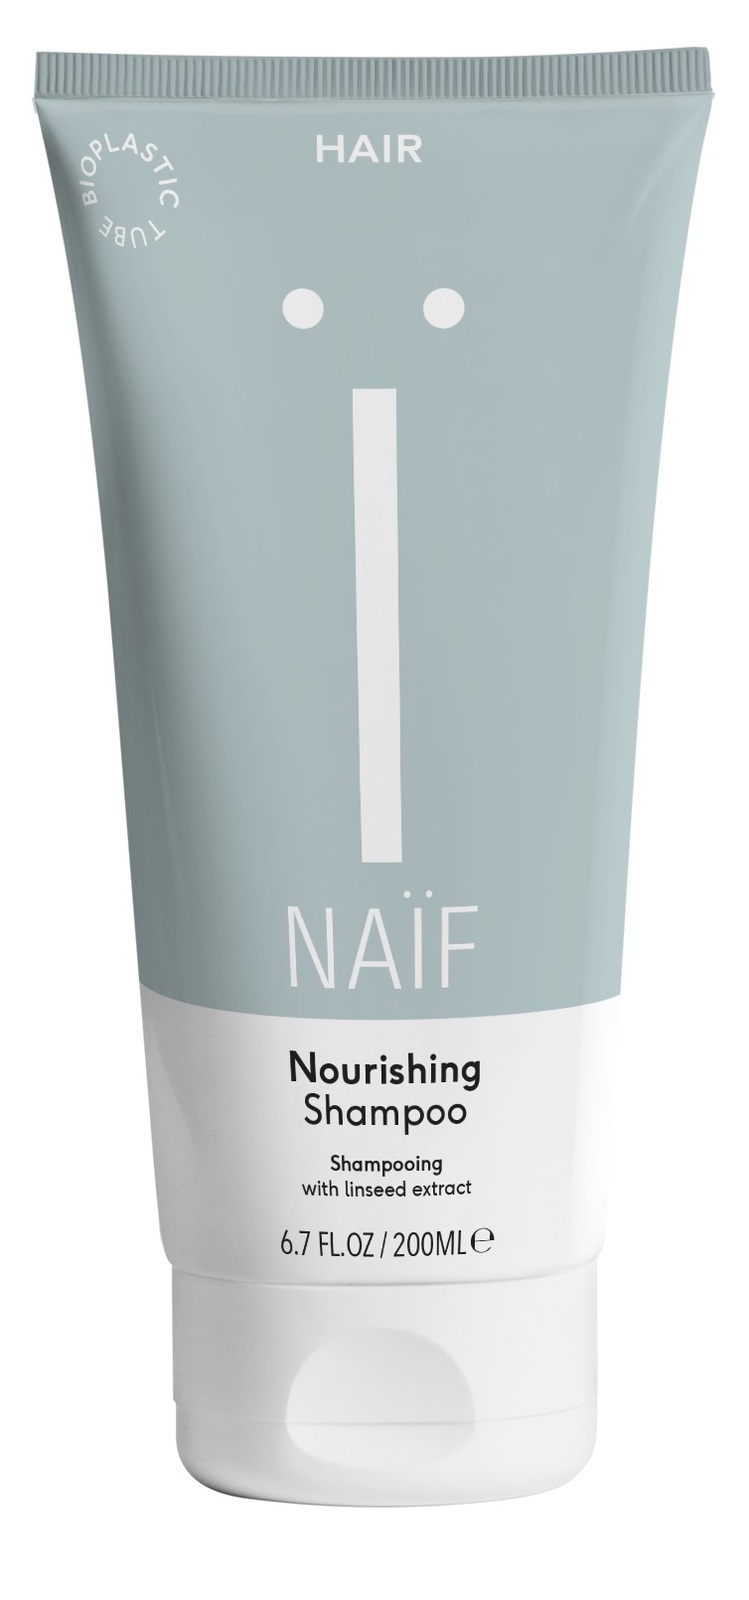 Naif Nourishing Shampoo kopen